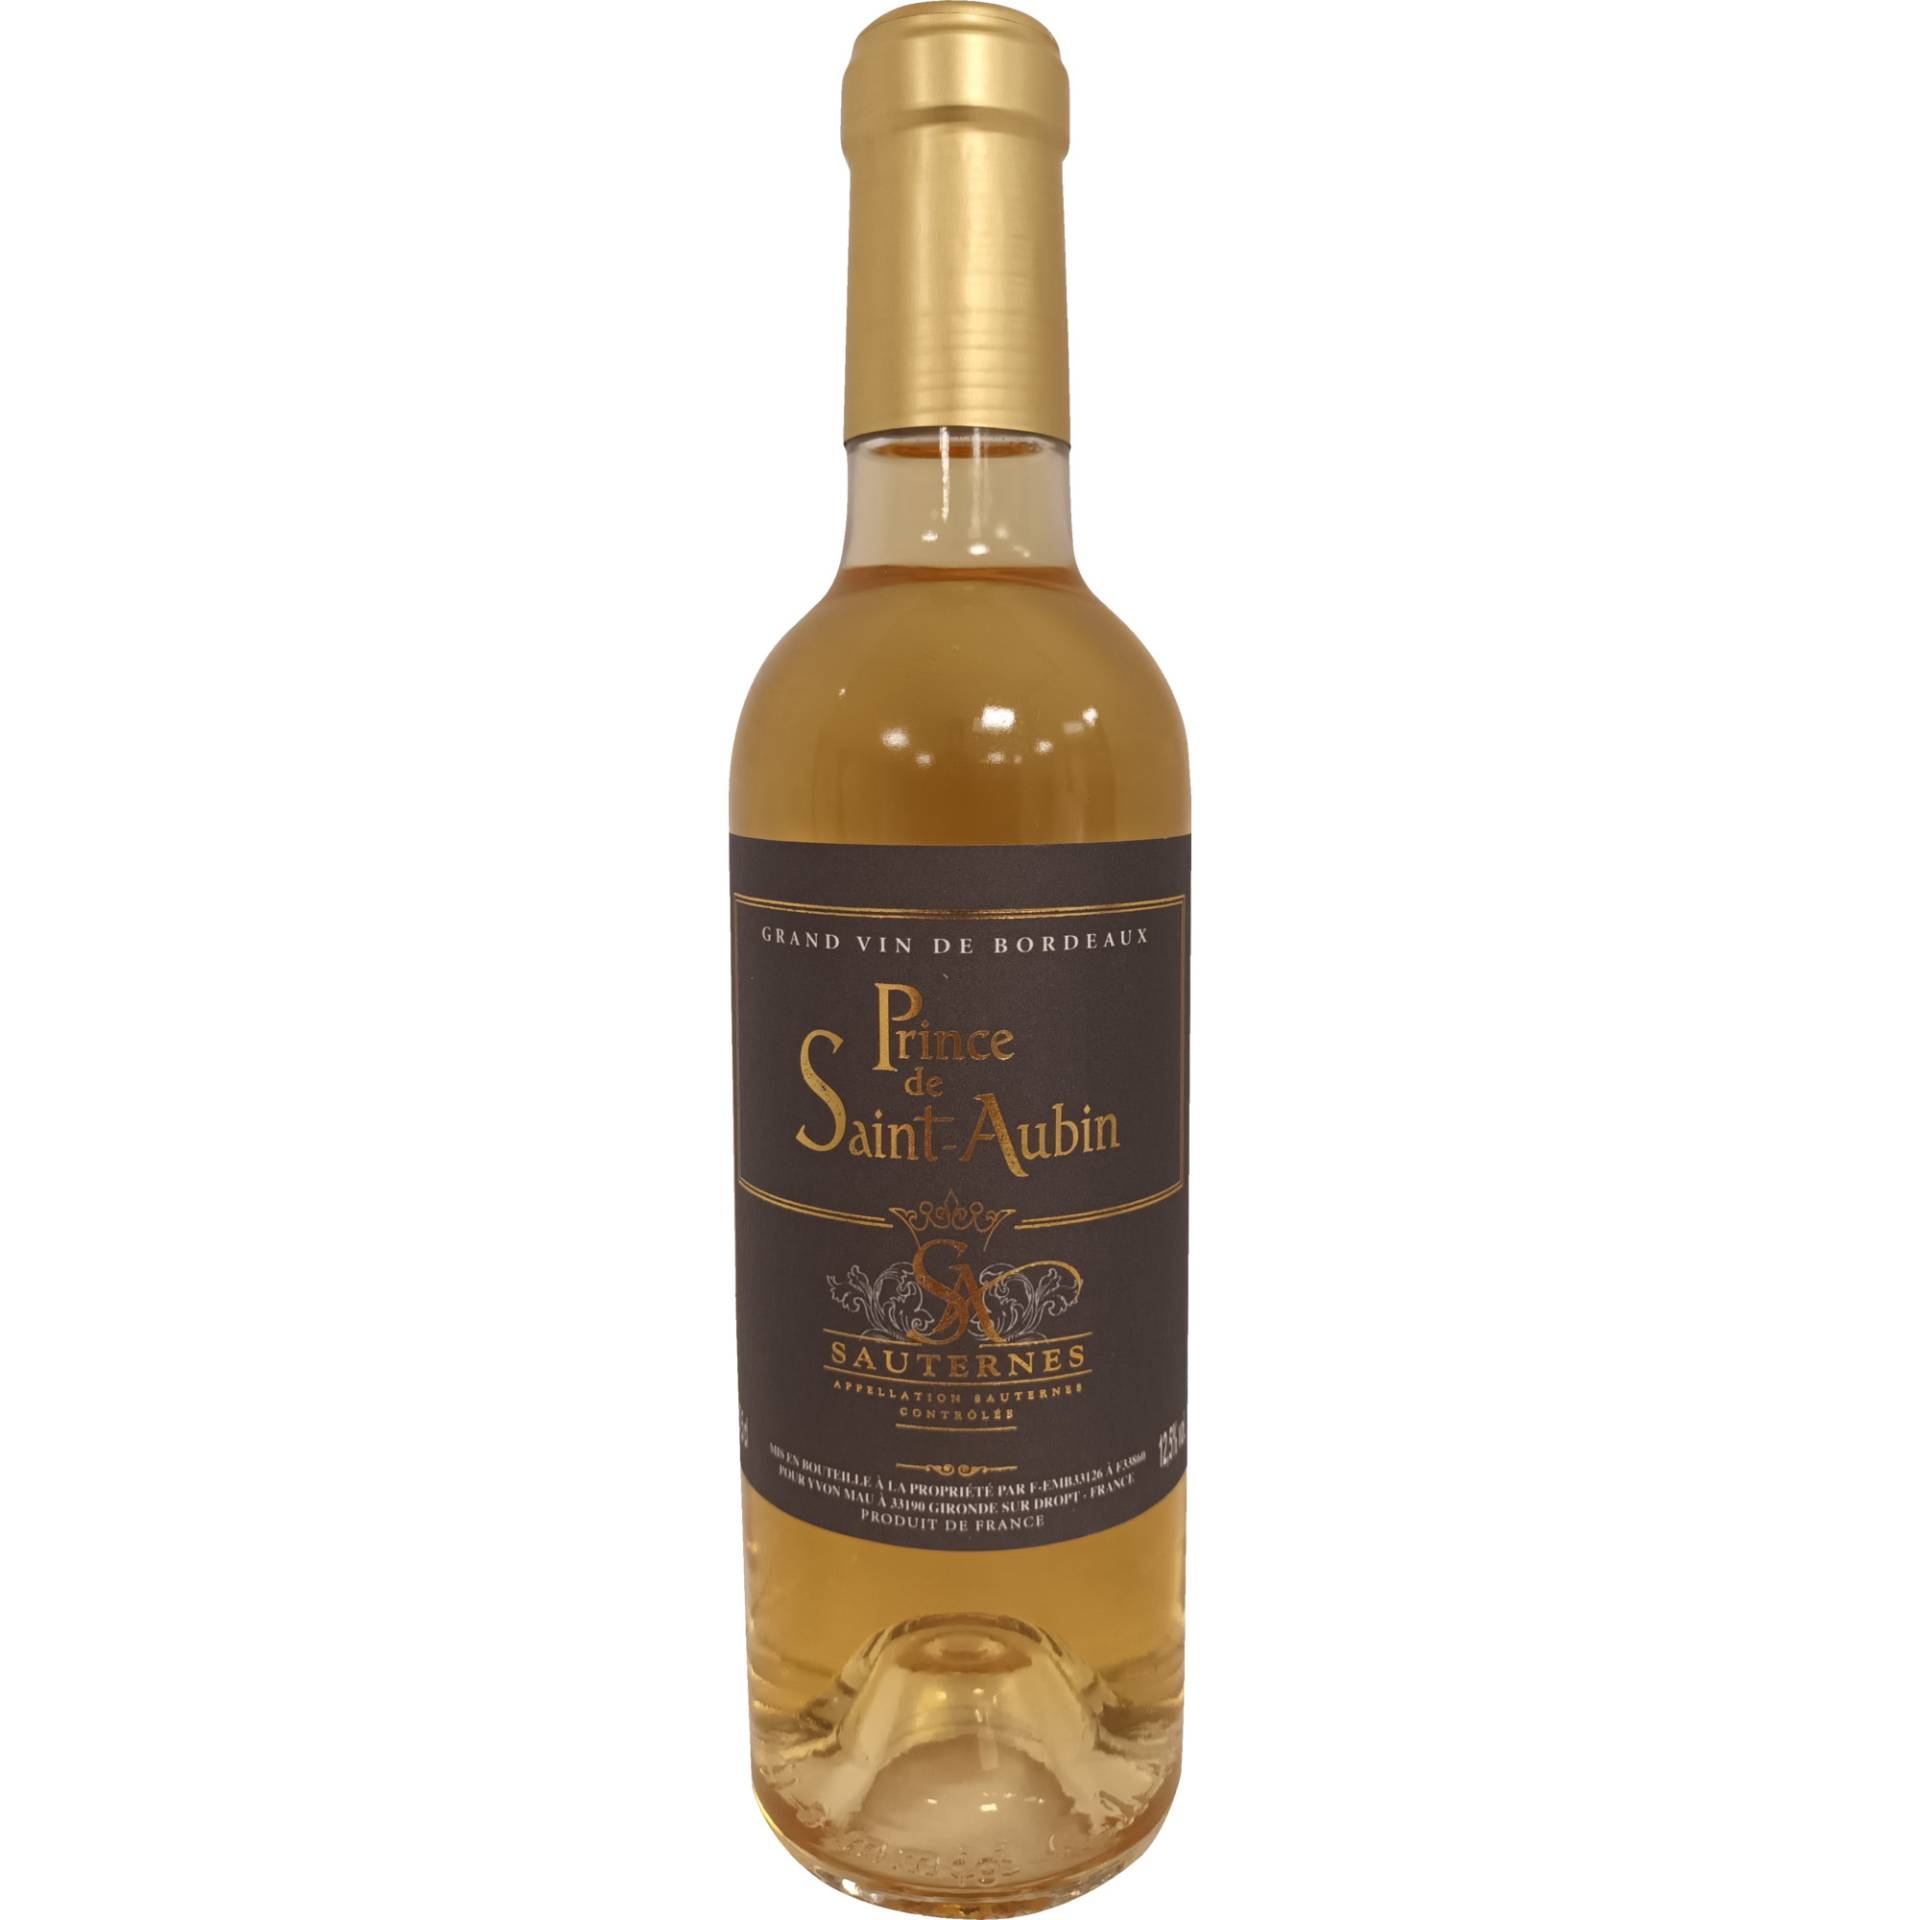 Prince de Saint-Aubin, Sauternes AOP, 0,375 L, Bordeaux, 2019, Weißwein von Yvon Mau 33190 Gironde sur Dropt - France